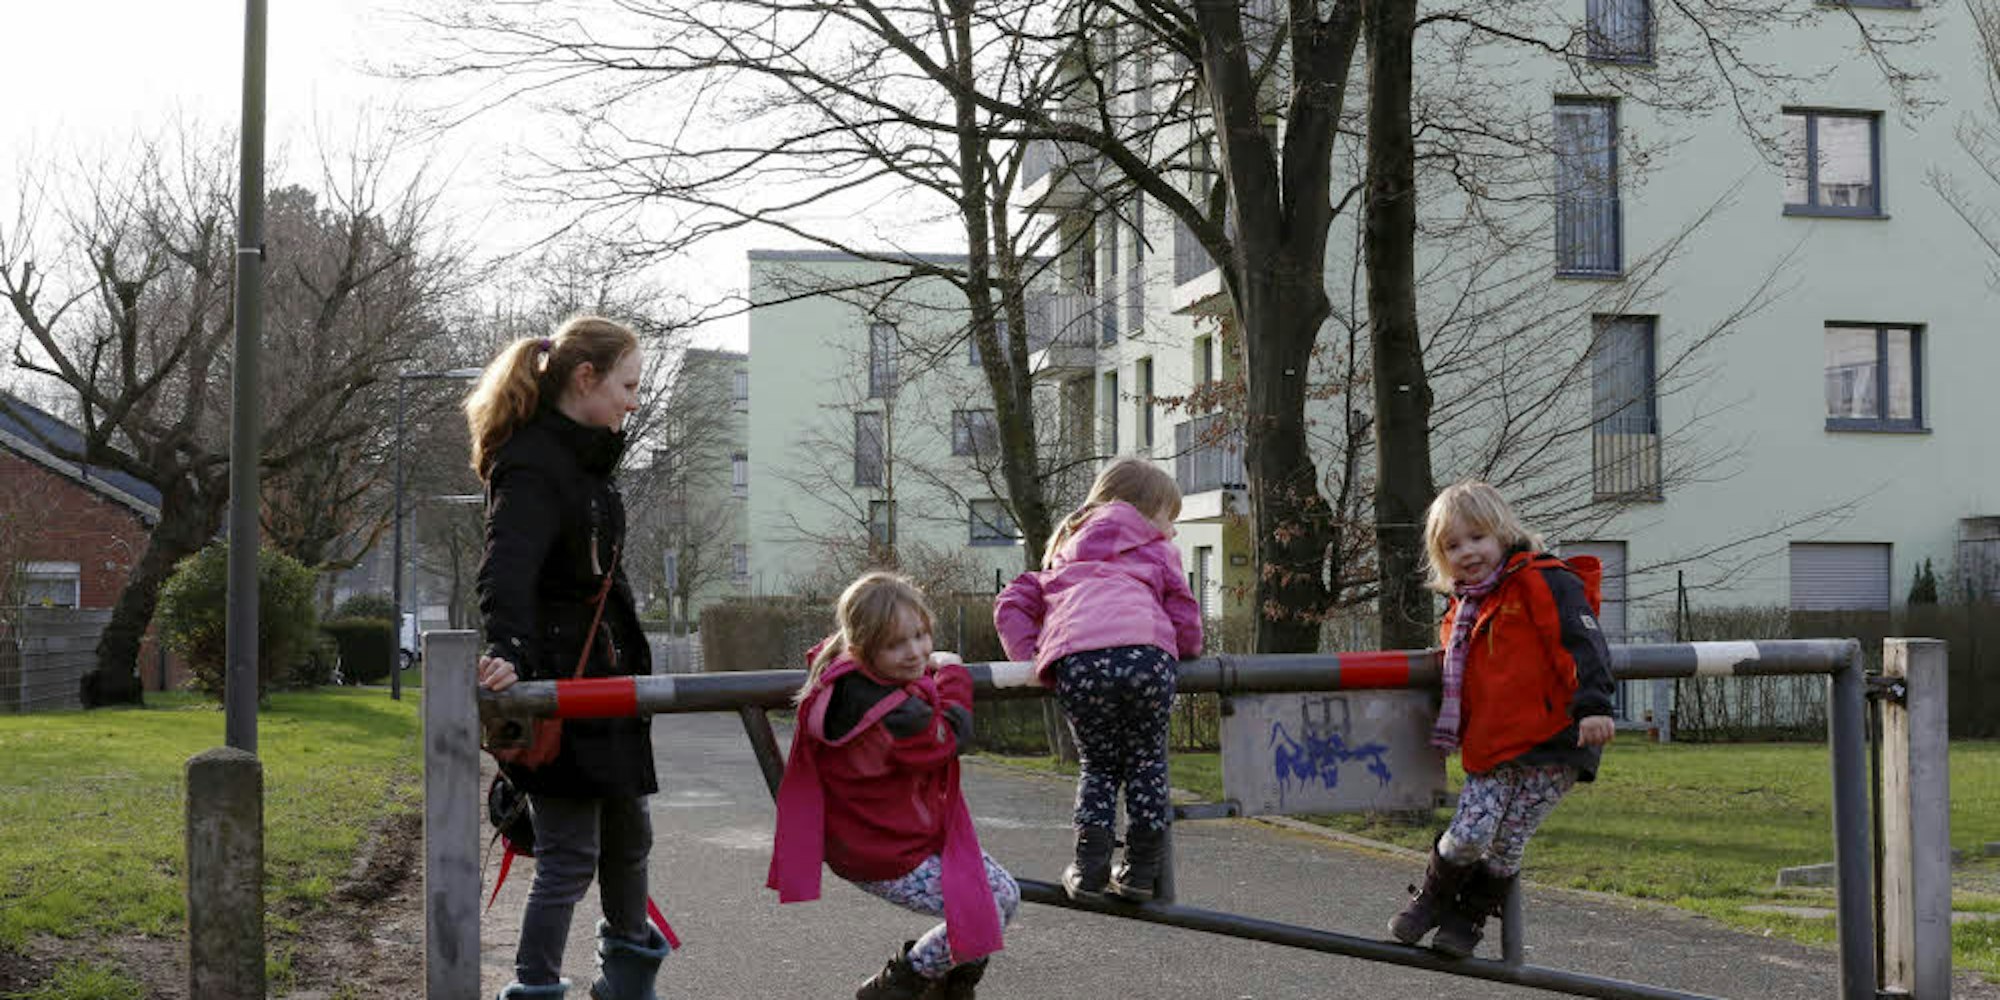 Kinder überwinden Grenzen kletternd entlang des Buchheimer Wegs in Ostheim, wo die GAG neu gebaut hat.